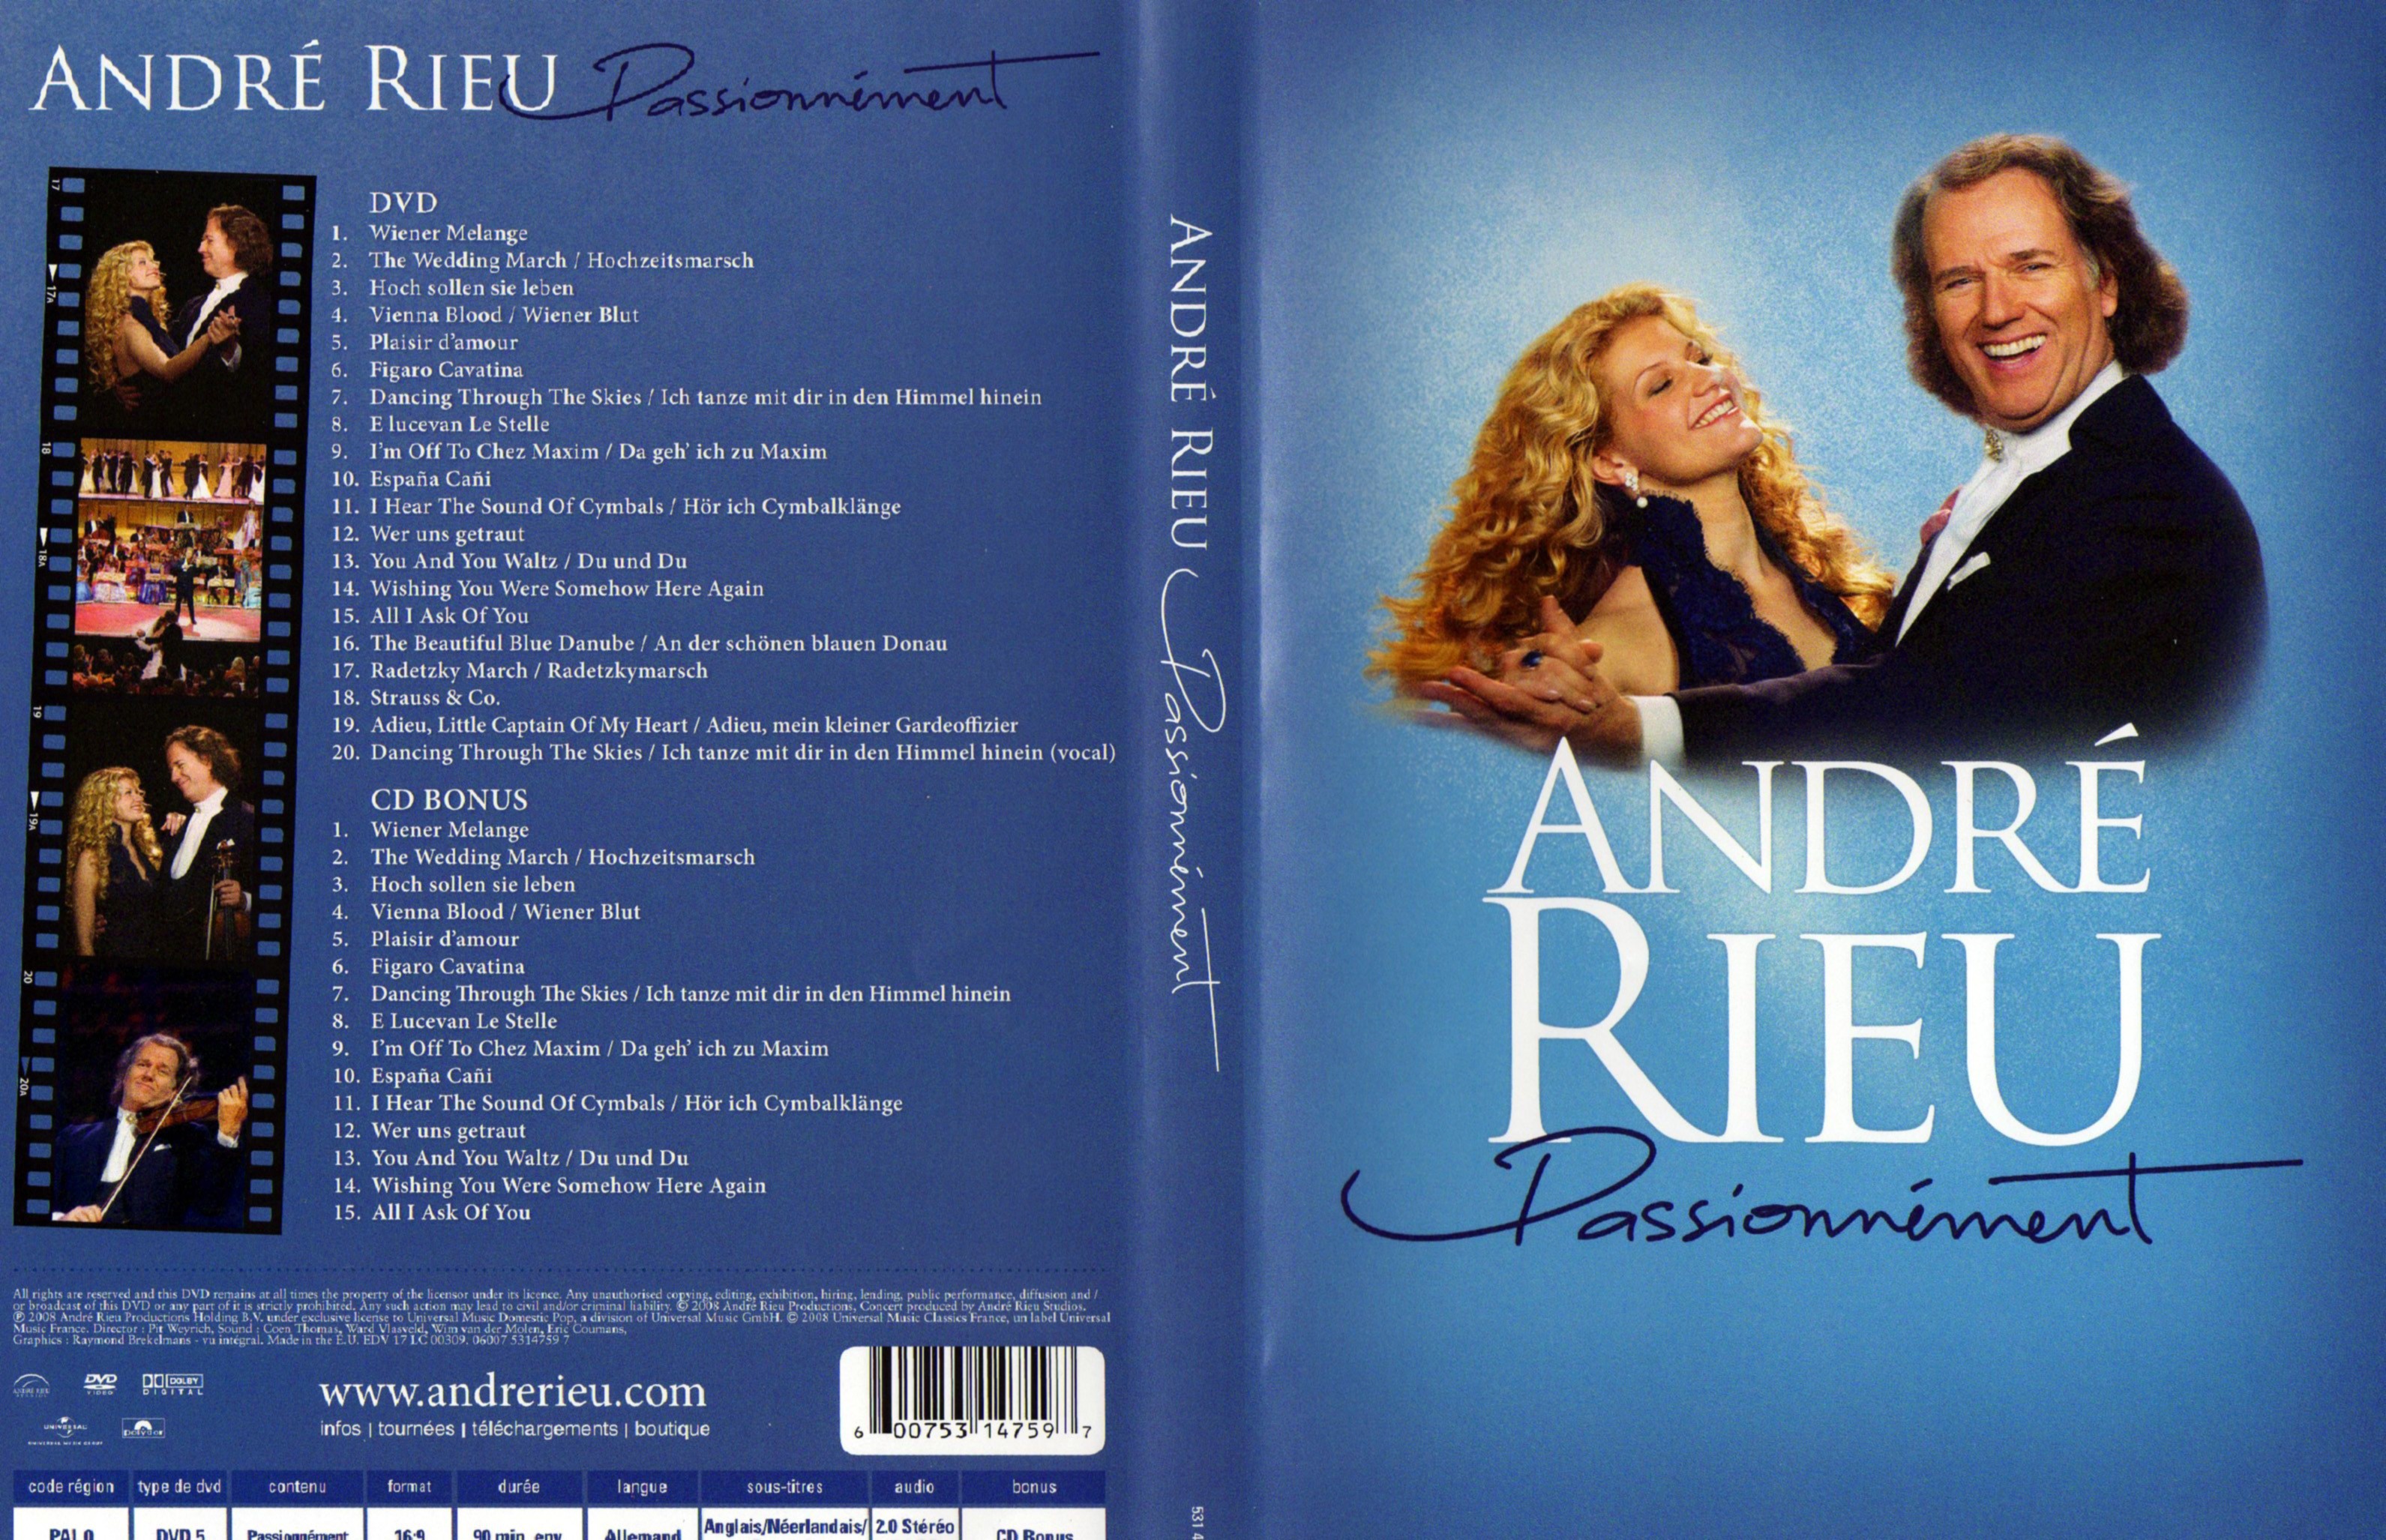 Jaquette DVD Andre Rieu Passionnment